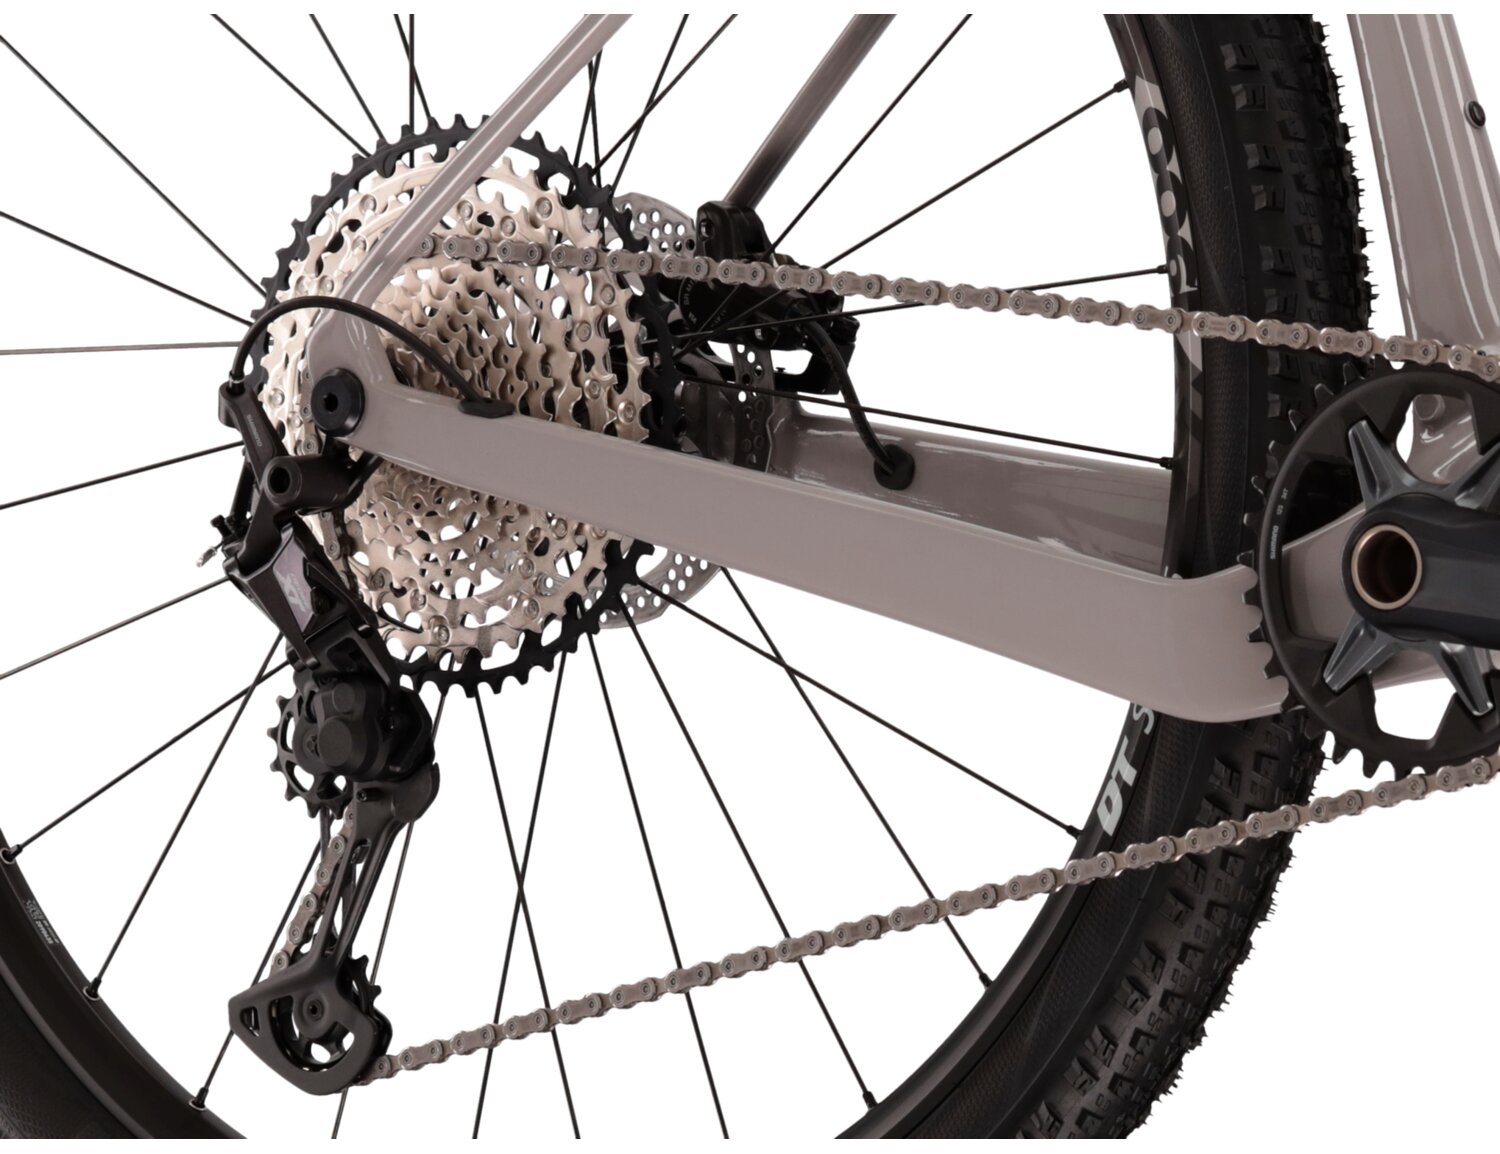  Tylna dwunastobiegowa przerzutka Shimano Deore XT M8100 oraz hydrauliczne hamulce tarczowe Shimano MT500 w rowerze górskim MTB XC KROSS Level 12.0  